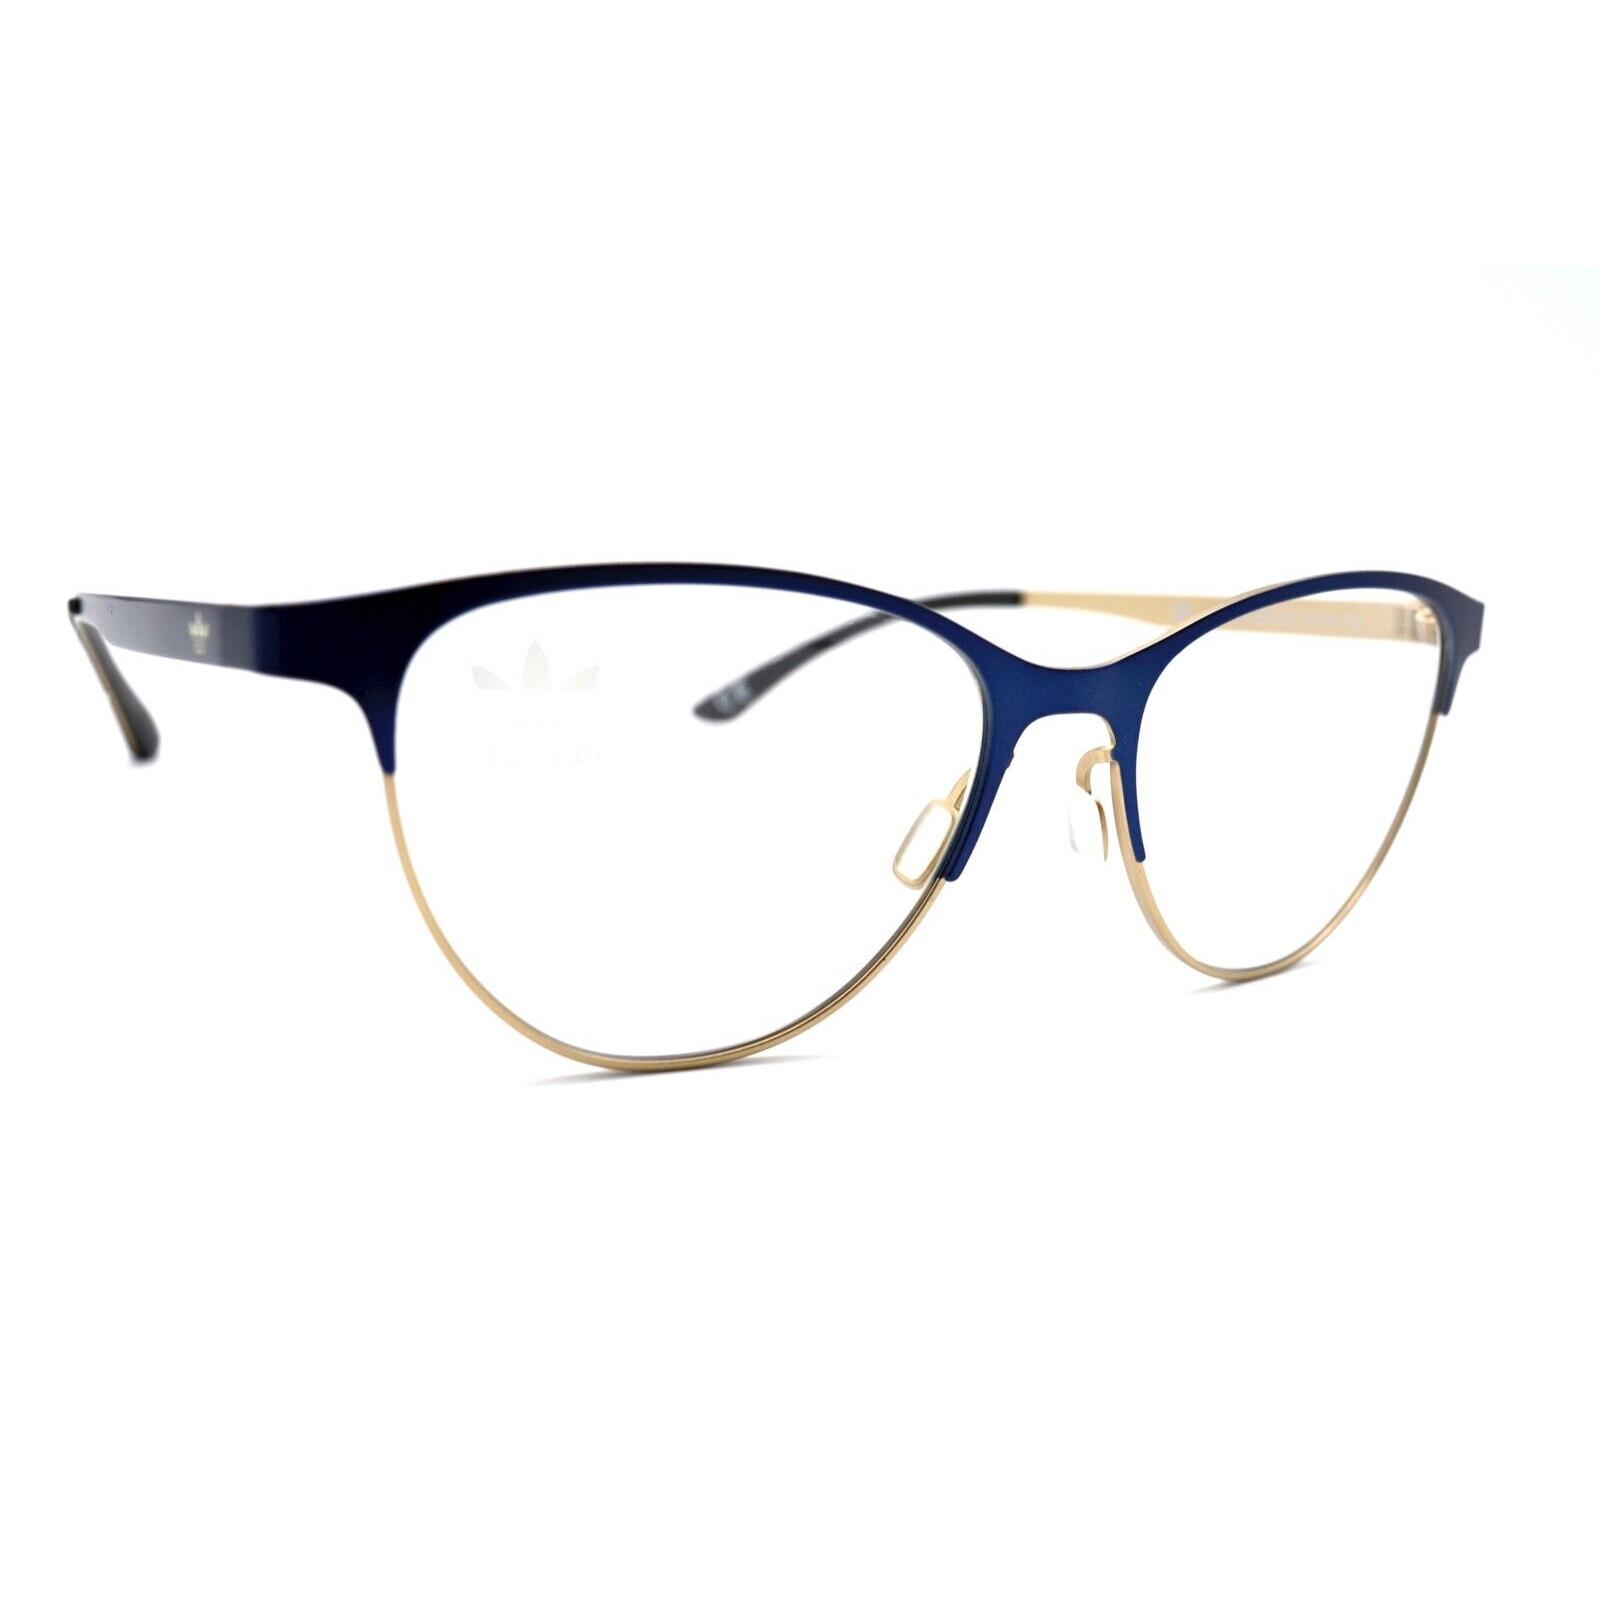 Adidas AOM002O.028.120 Blue Gold Eyeglasses Frames RX 52-16 12